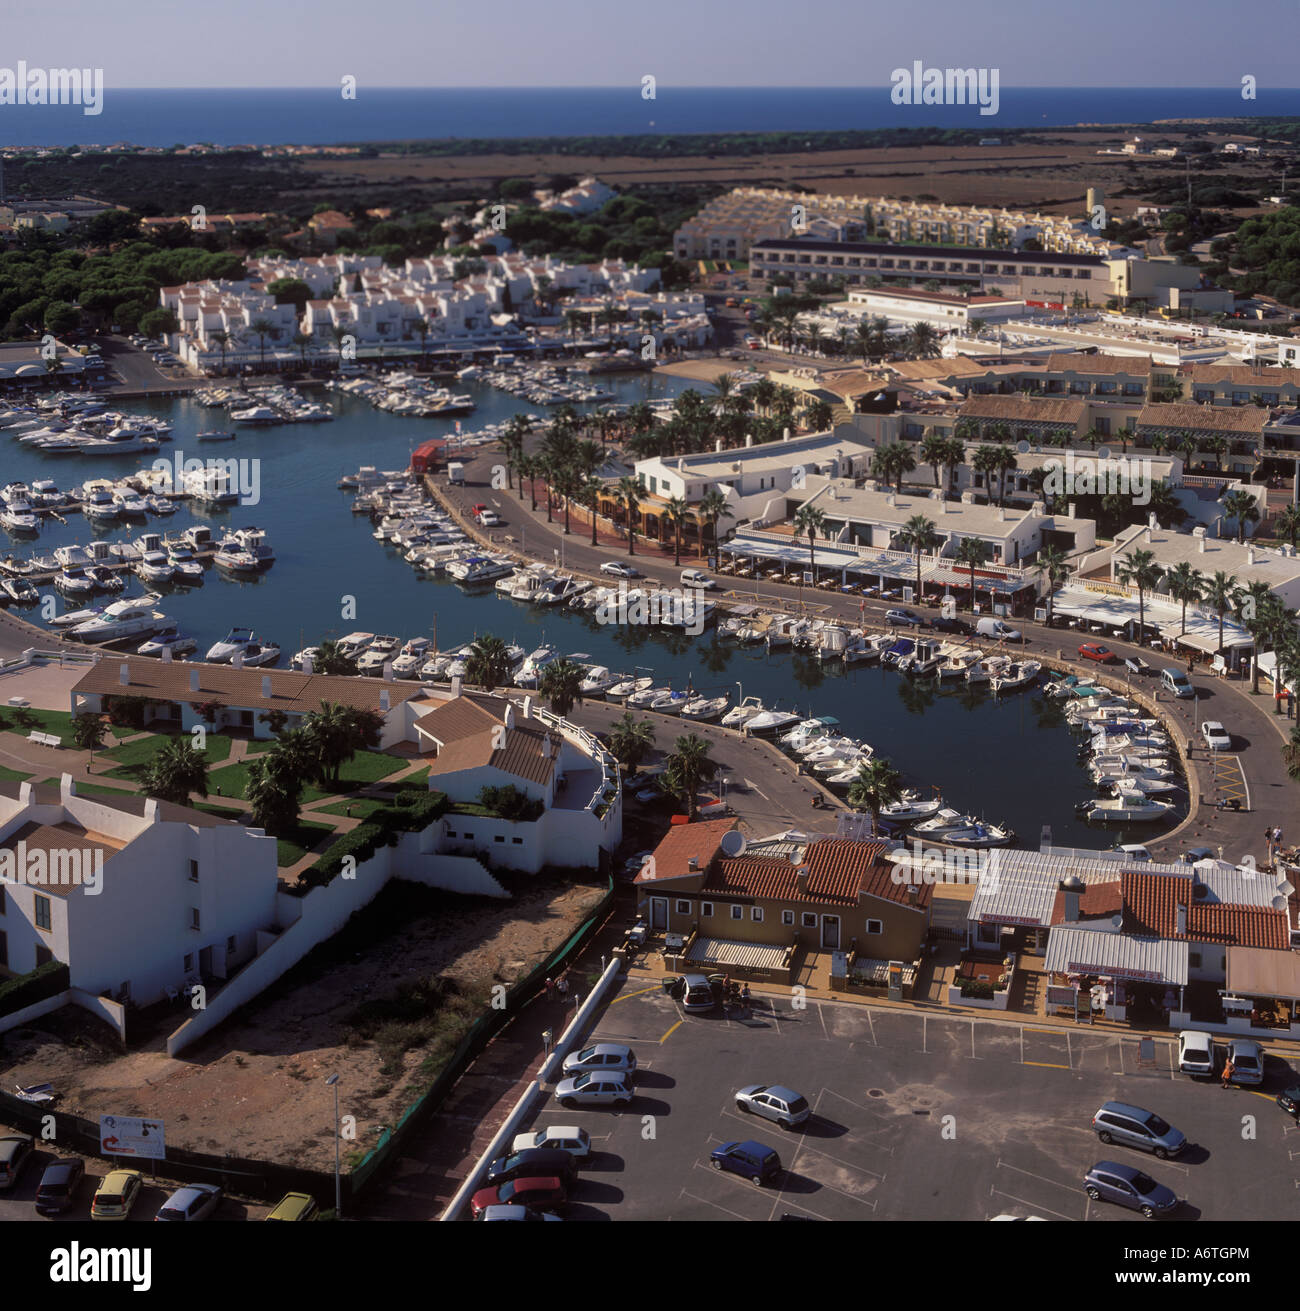 Vista aérea - Mirando hacia el oeste sobre el puerto deportivo y las instalaciones del complejo de Cala en Bosc ( Cala en Bosch ), costa sur oeste Menorc Foto de stock